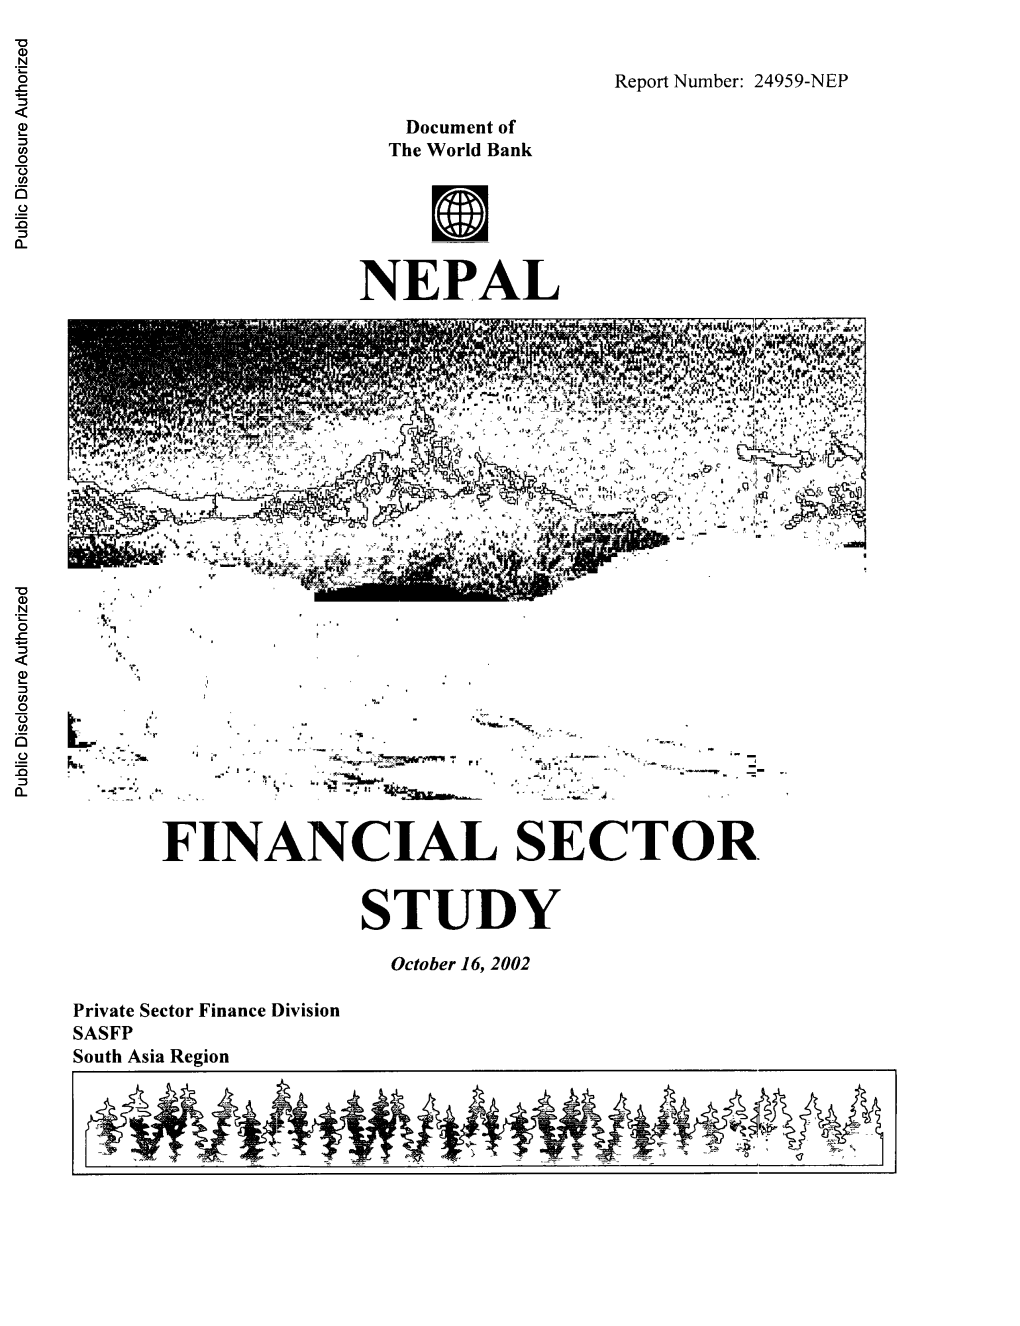 NEPAL Public Disclosure Authorized